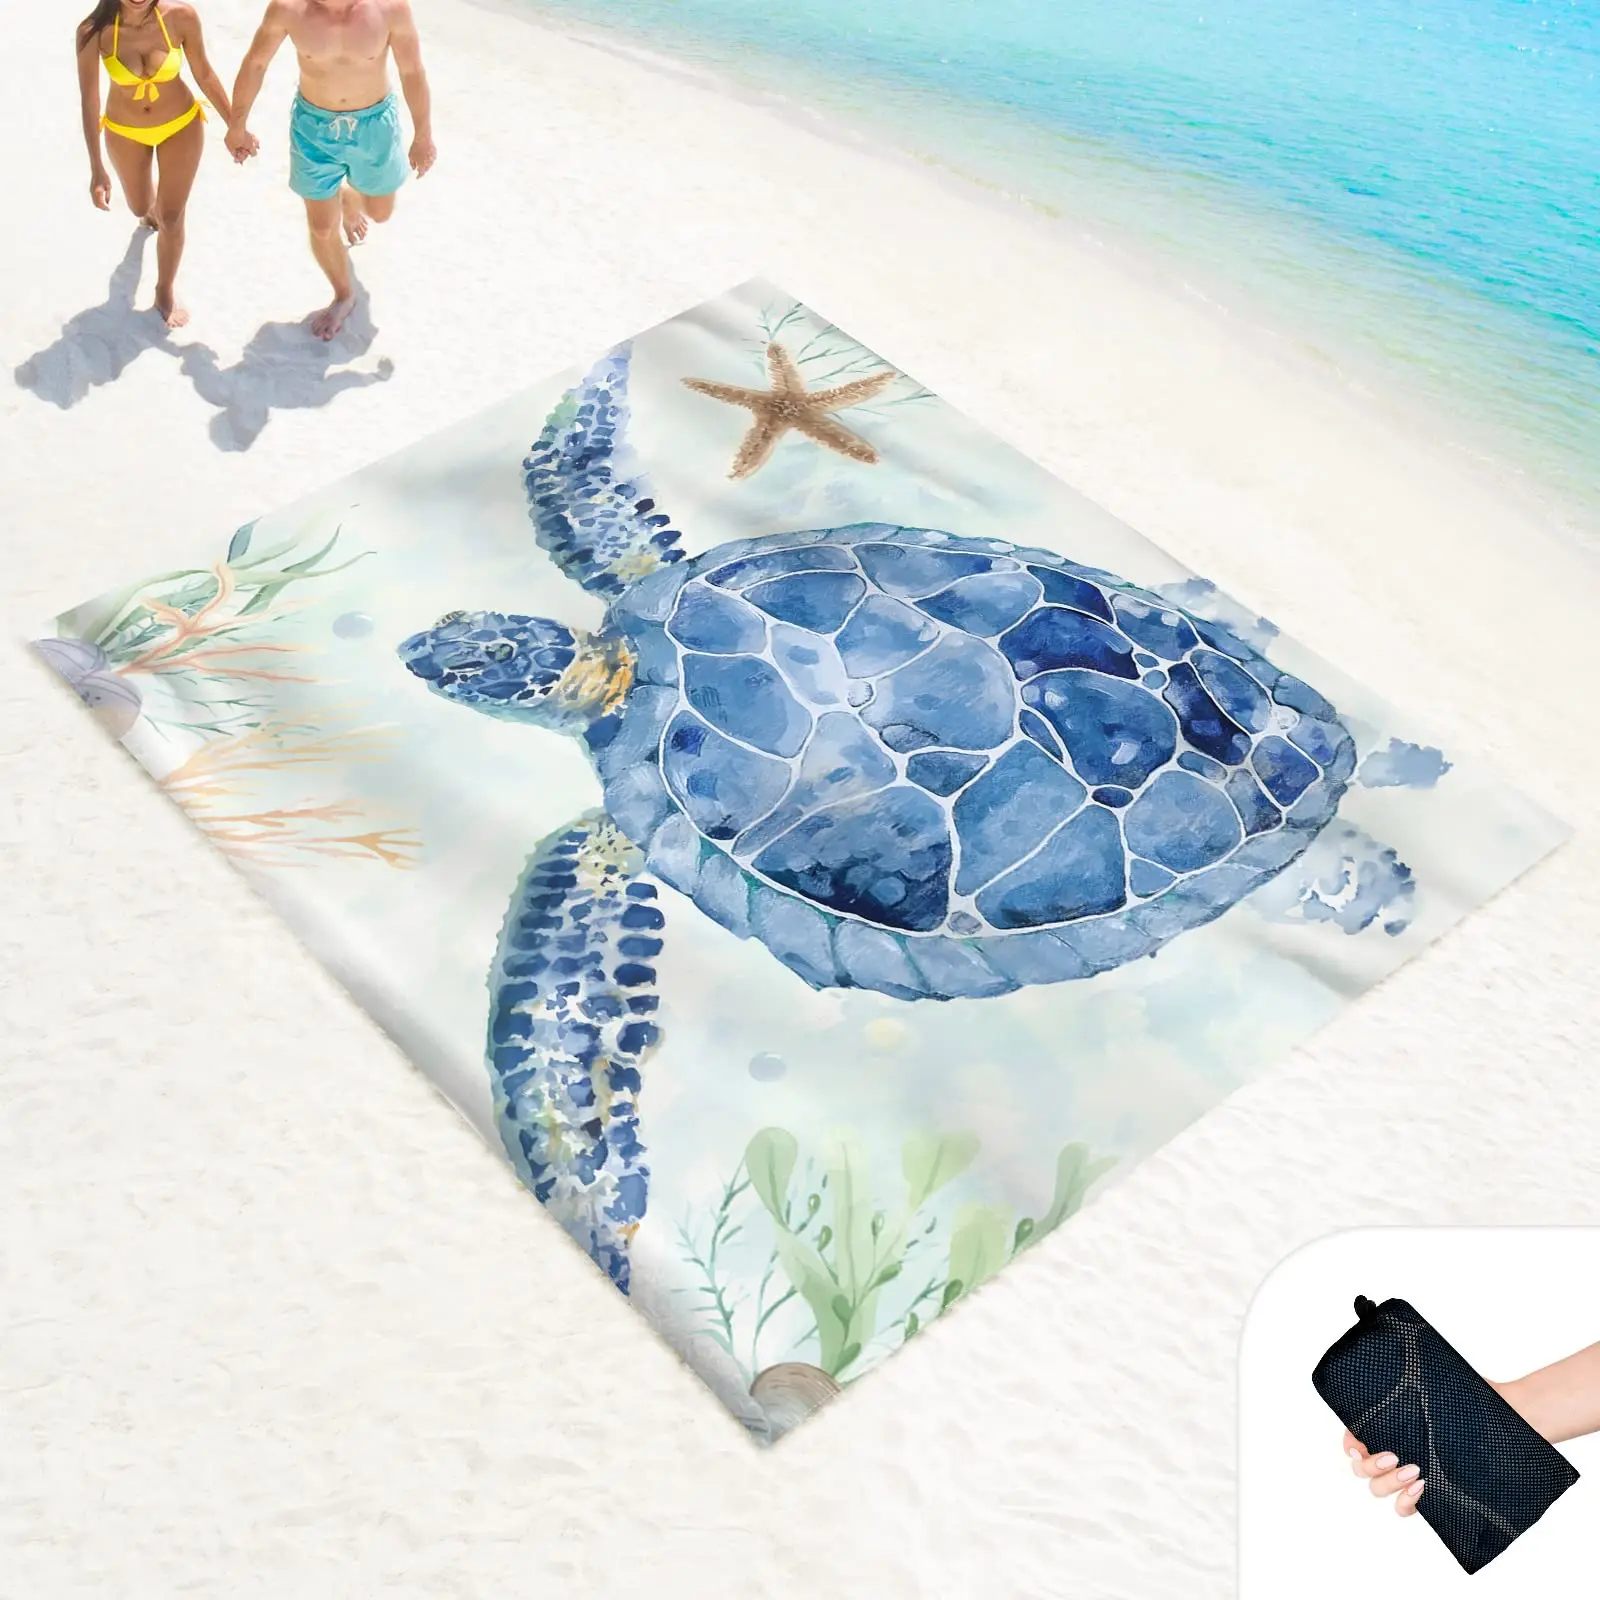 Plaj battaniyesi Kum Geçirmez Su Geçirmez Kum Ücretsiz Mat ile Köşe Cepler ve Örgü Çanta için Açık, Piknik, Seyahat, Suluboya Kaplumbağa